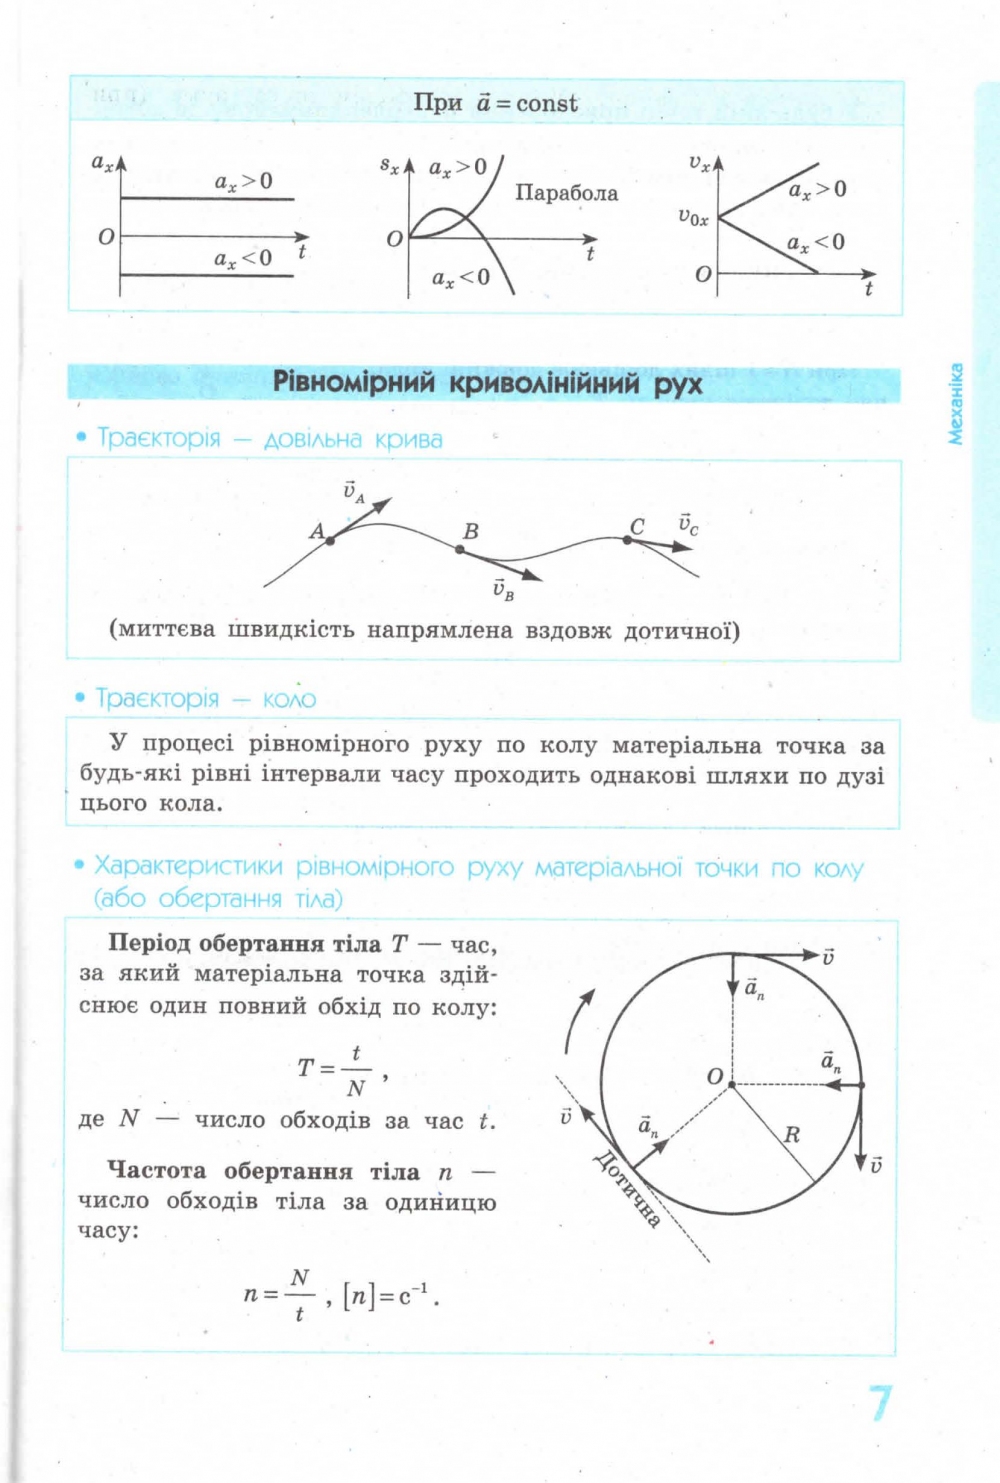 Фізика у таблицях і схемах для учнів 7—11 класів. Серiя 